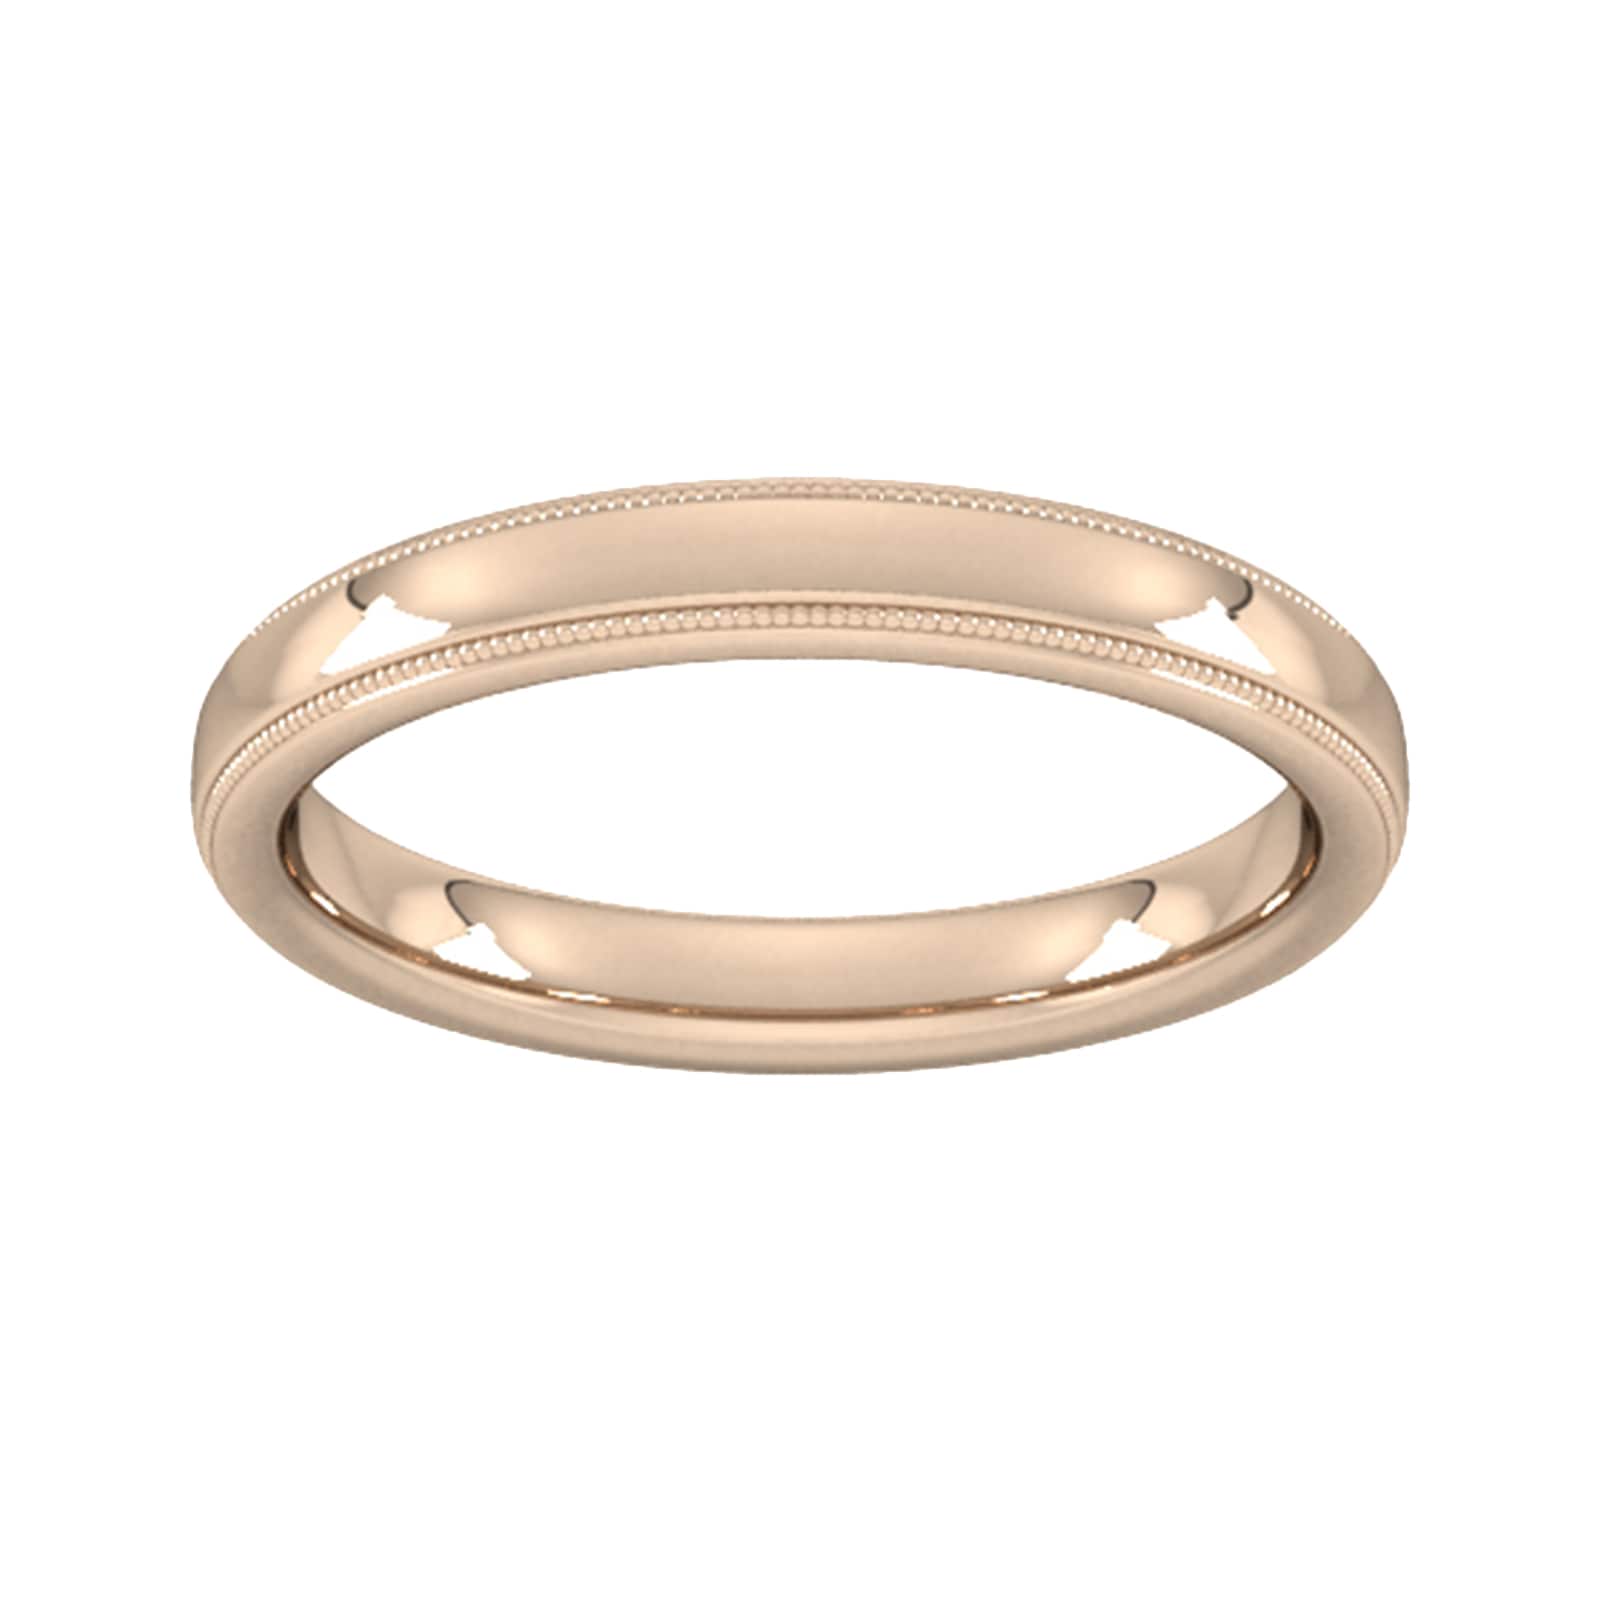 3mm D Shape Standard Milgrain Edge Wedding Ring In 9 Carat Rose Gold - Ring Size K